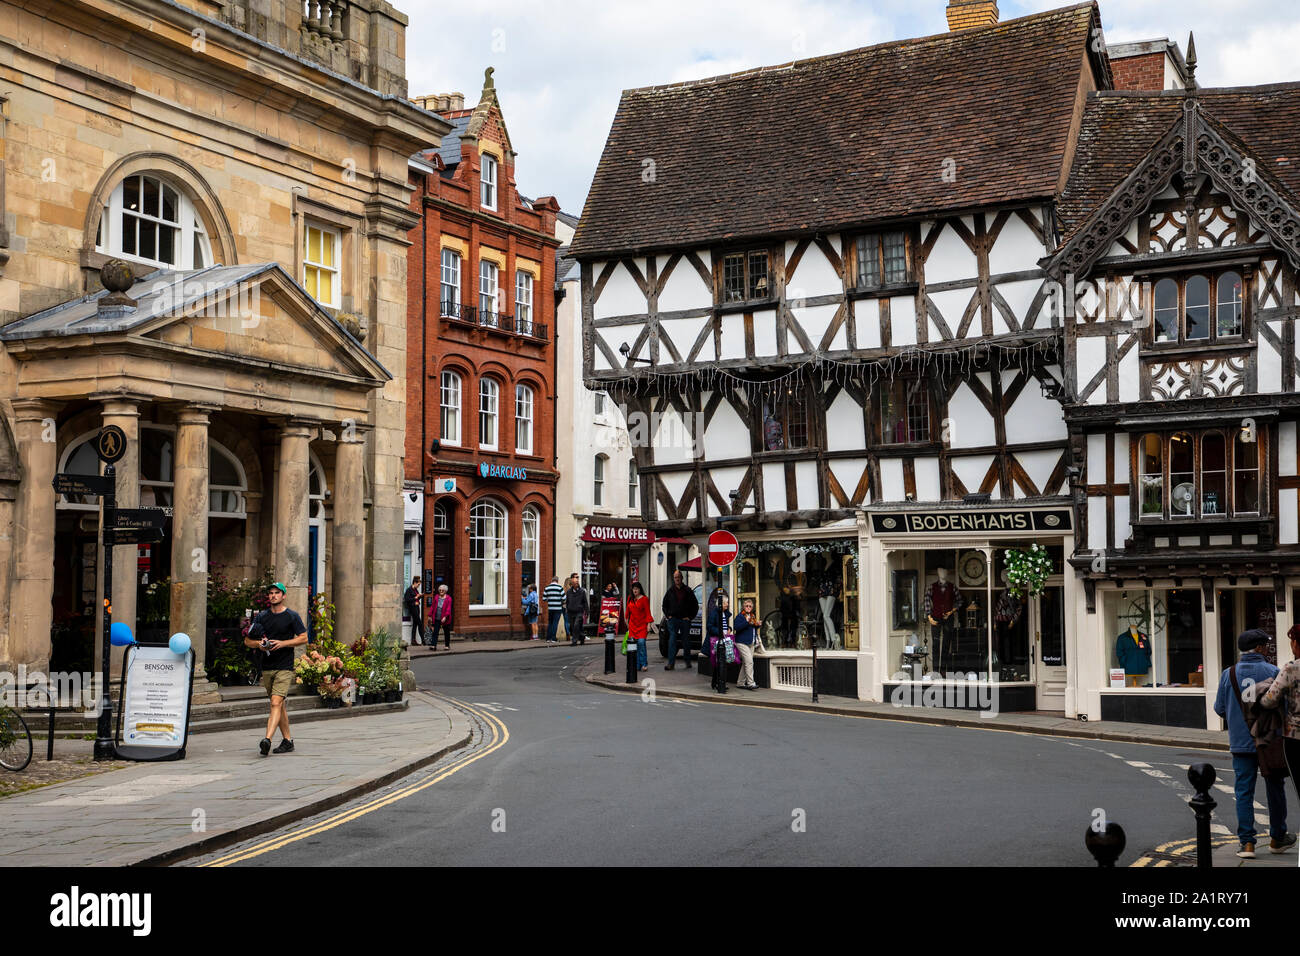 LUDLOW, SHROPSHIRE, England, UK - 8 septembre 2019 : bâtiments historiques le long de la rue de la ville de Ludlow. Banque D'Images